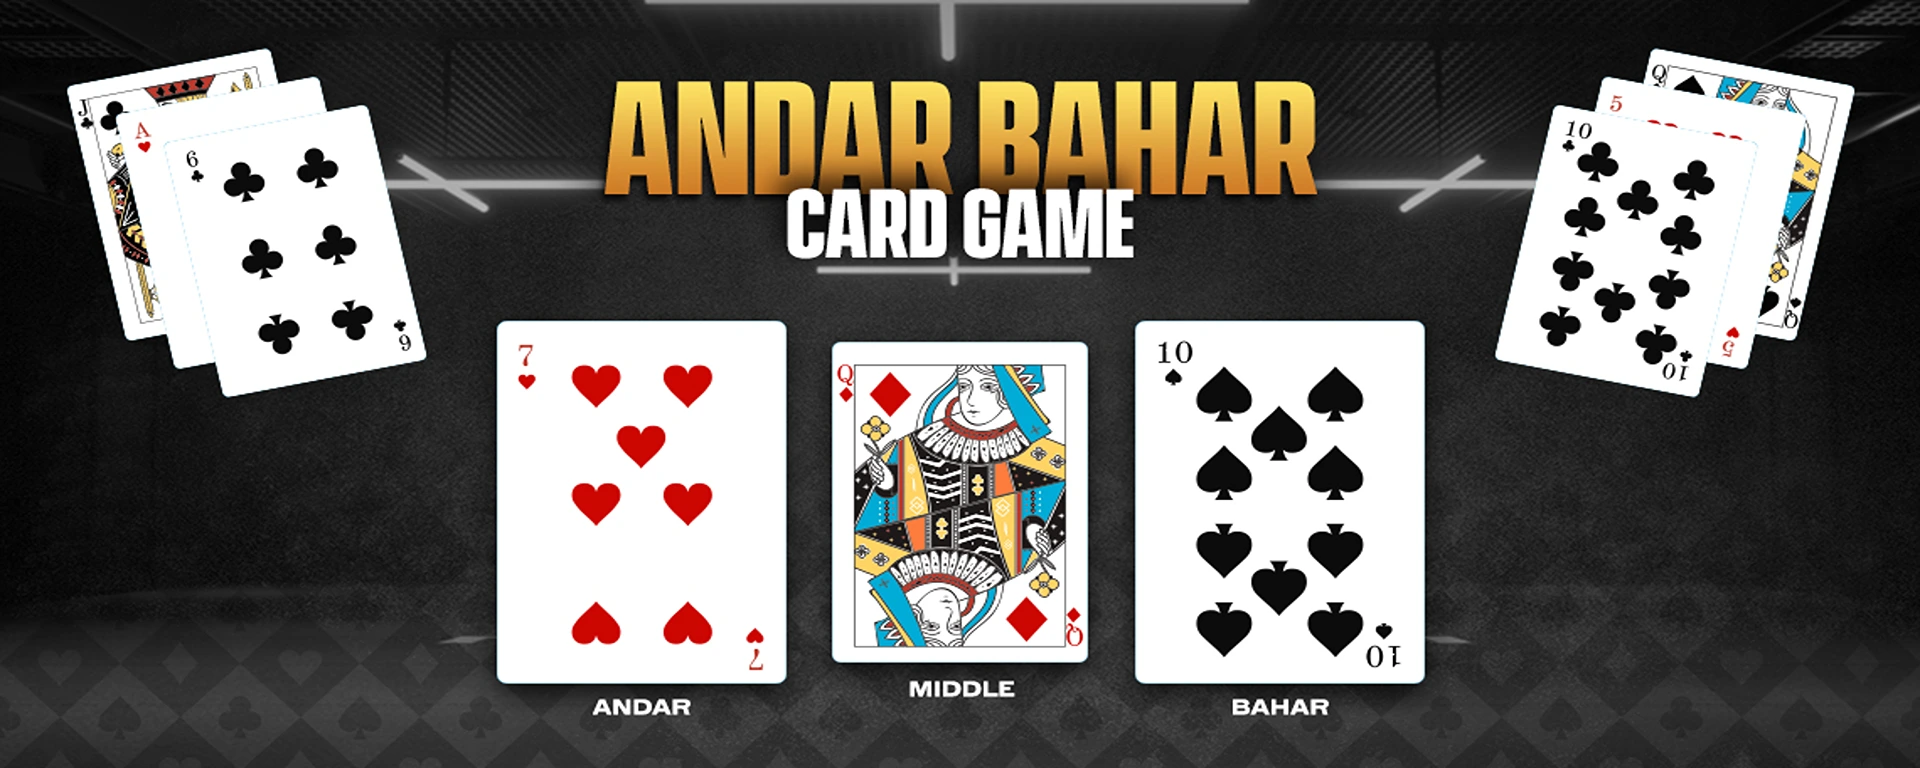 Andar Bahar Indian Card Game